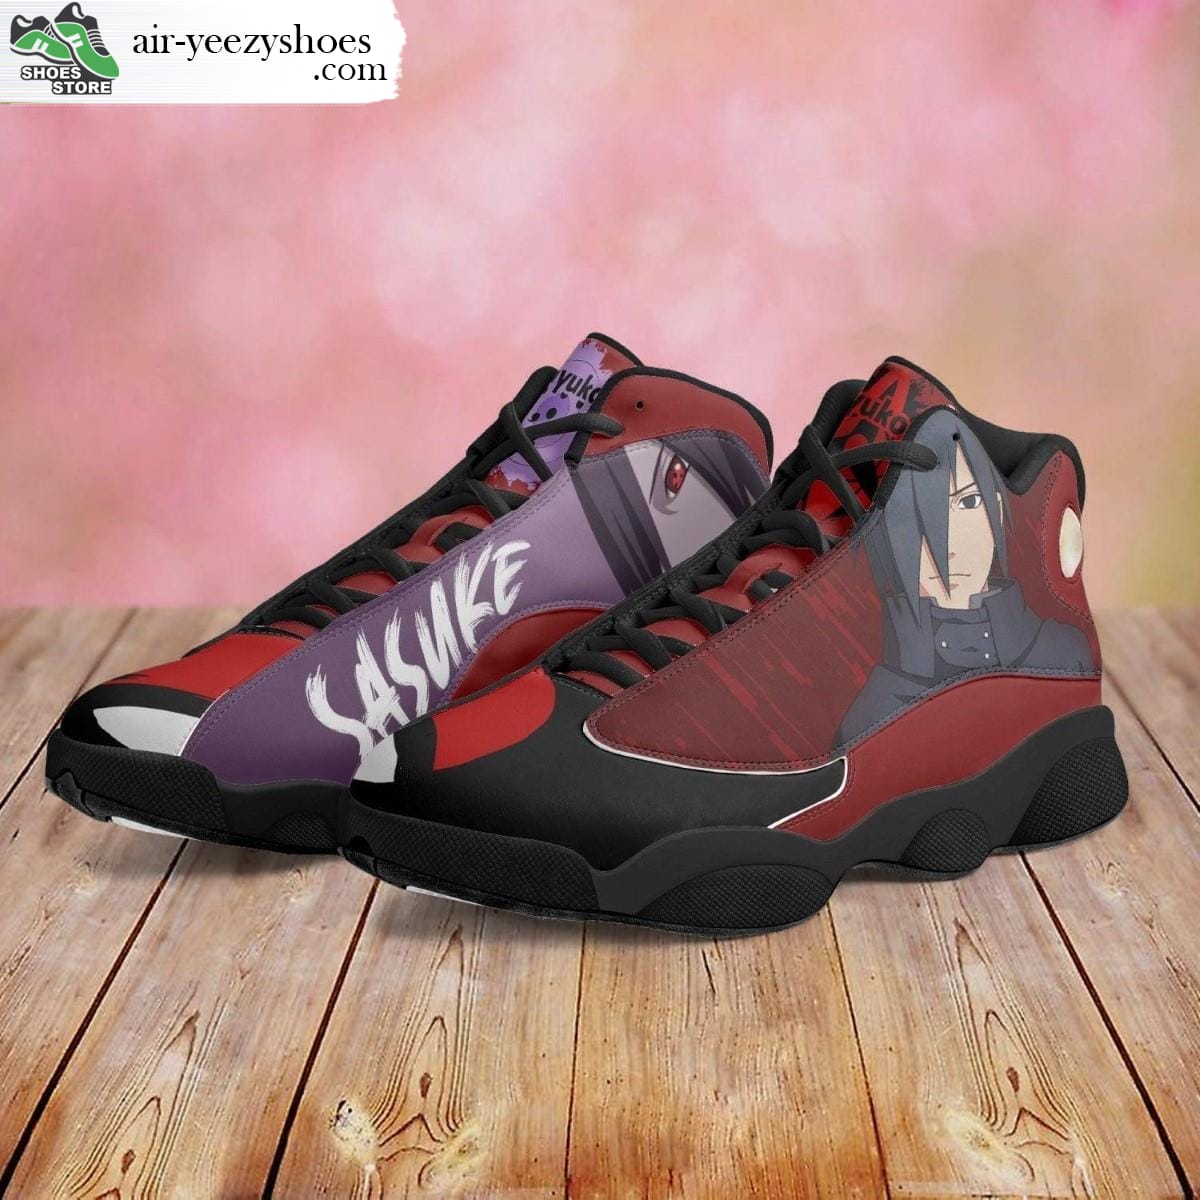 Sasuke Uchiha Jordan 13 Shoes, Naruto Gift